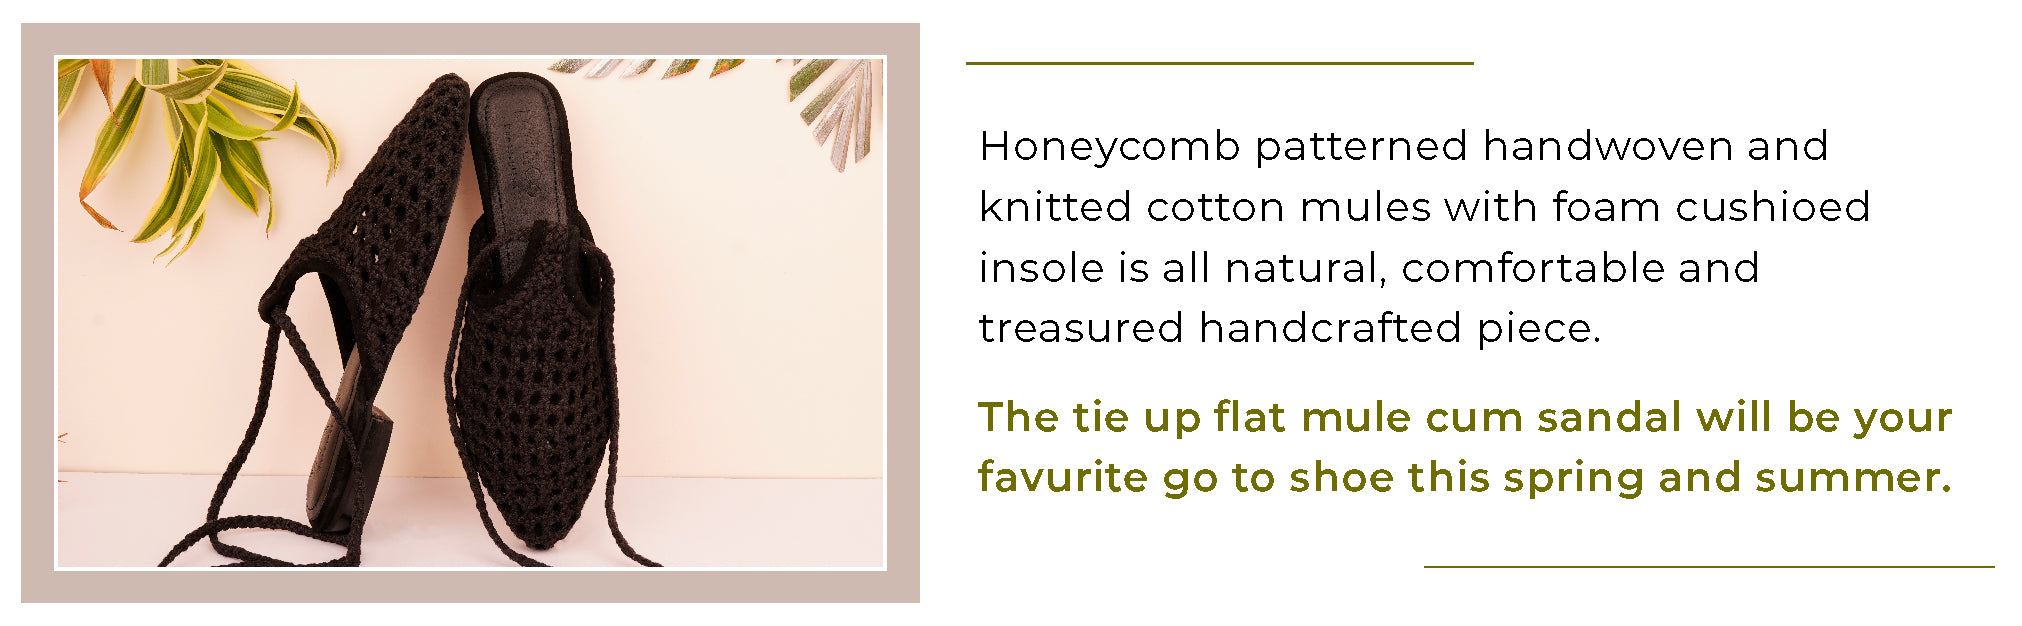 TUTSI Black Handwoven Honeycomb Tie Up Flat Mules